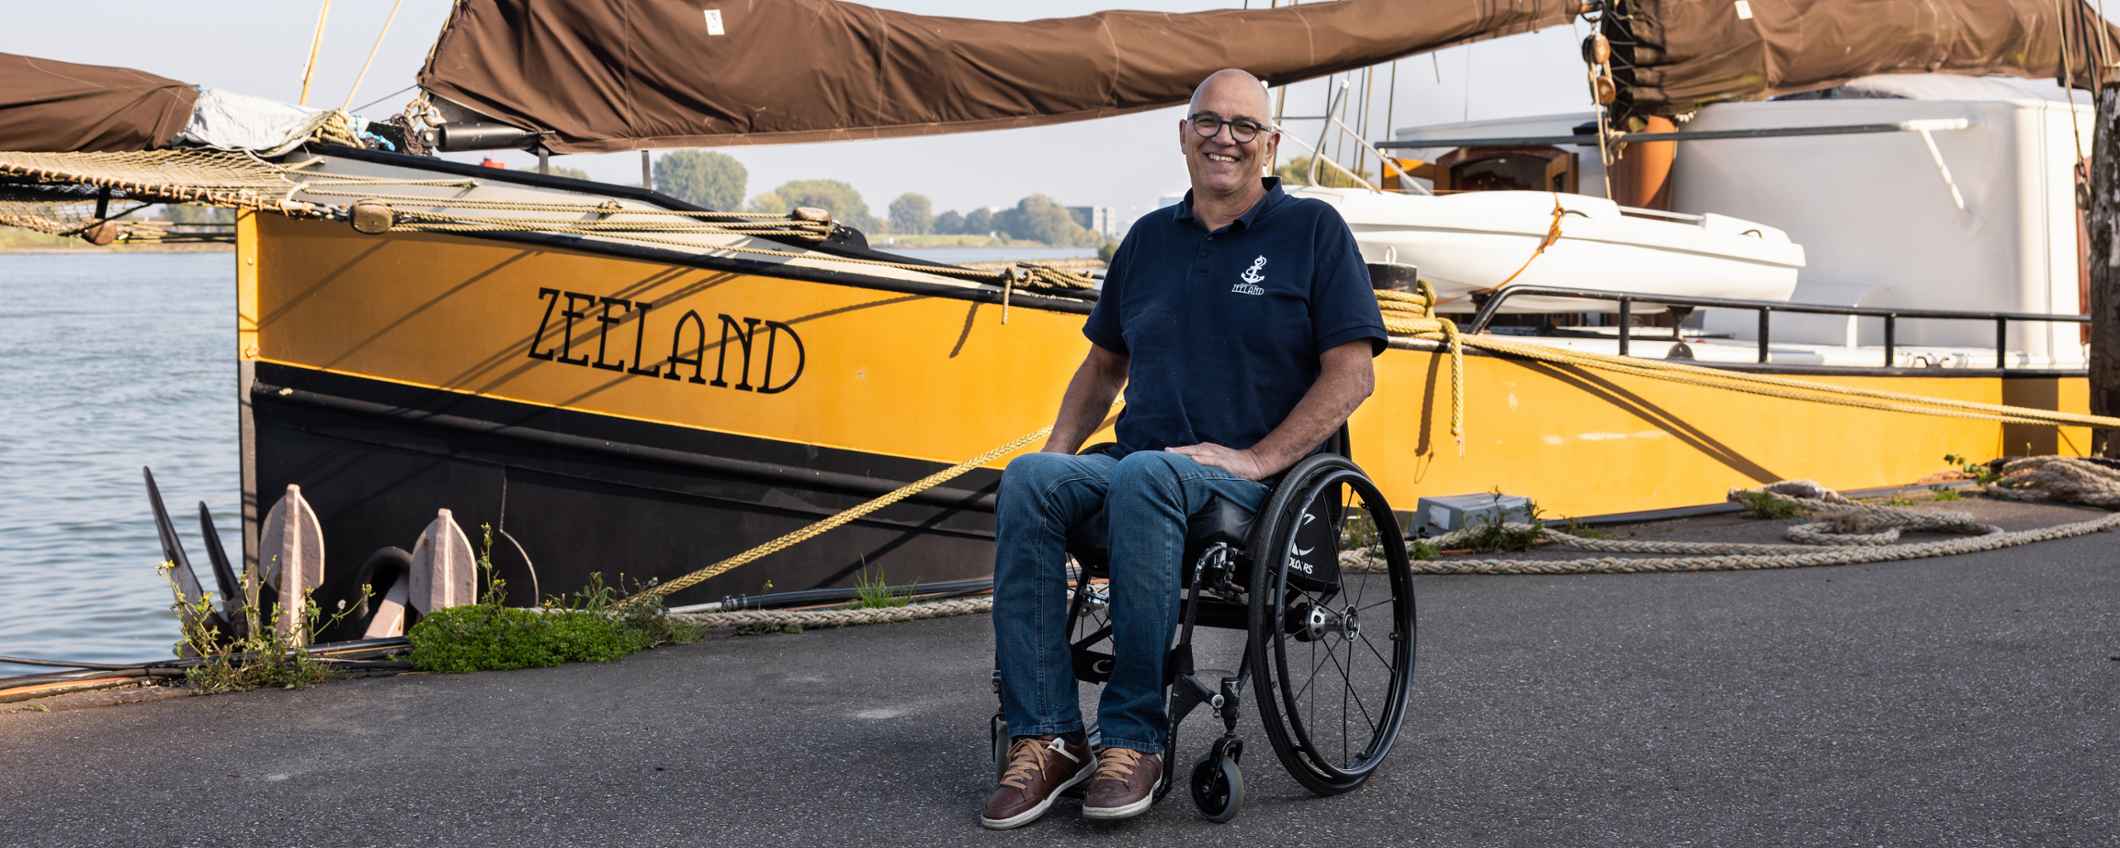 Peter van't Wout (NL), fondateur de la Fondation Zeeland qui a transformé un bateau pour l'adapter aux personnes avec un handicap. Photo: Jurre Rompa.